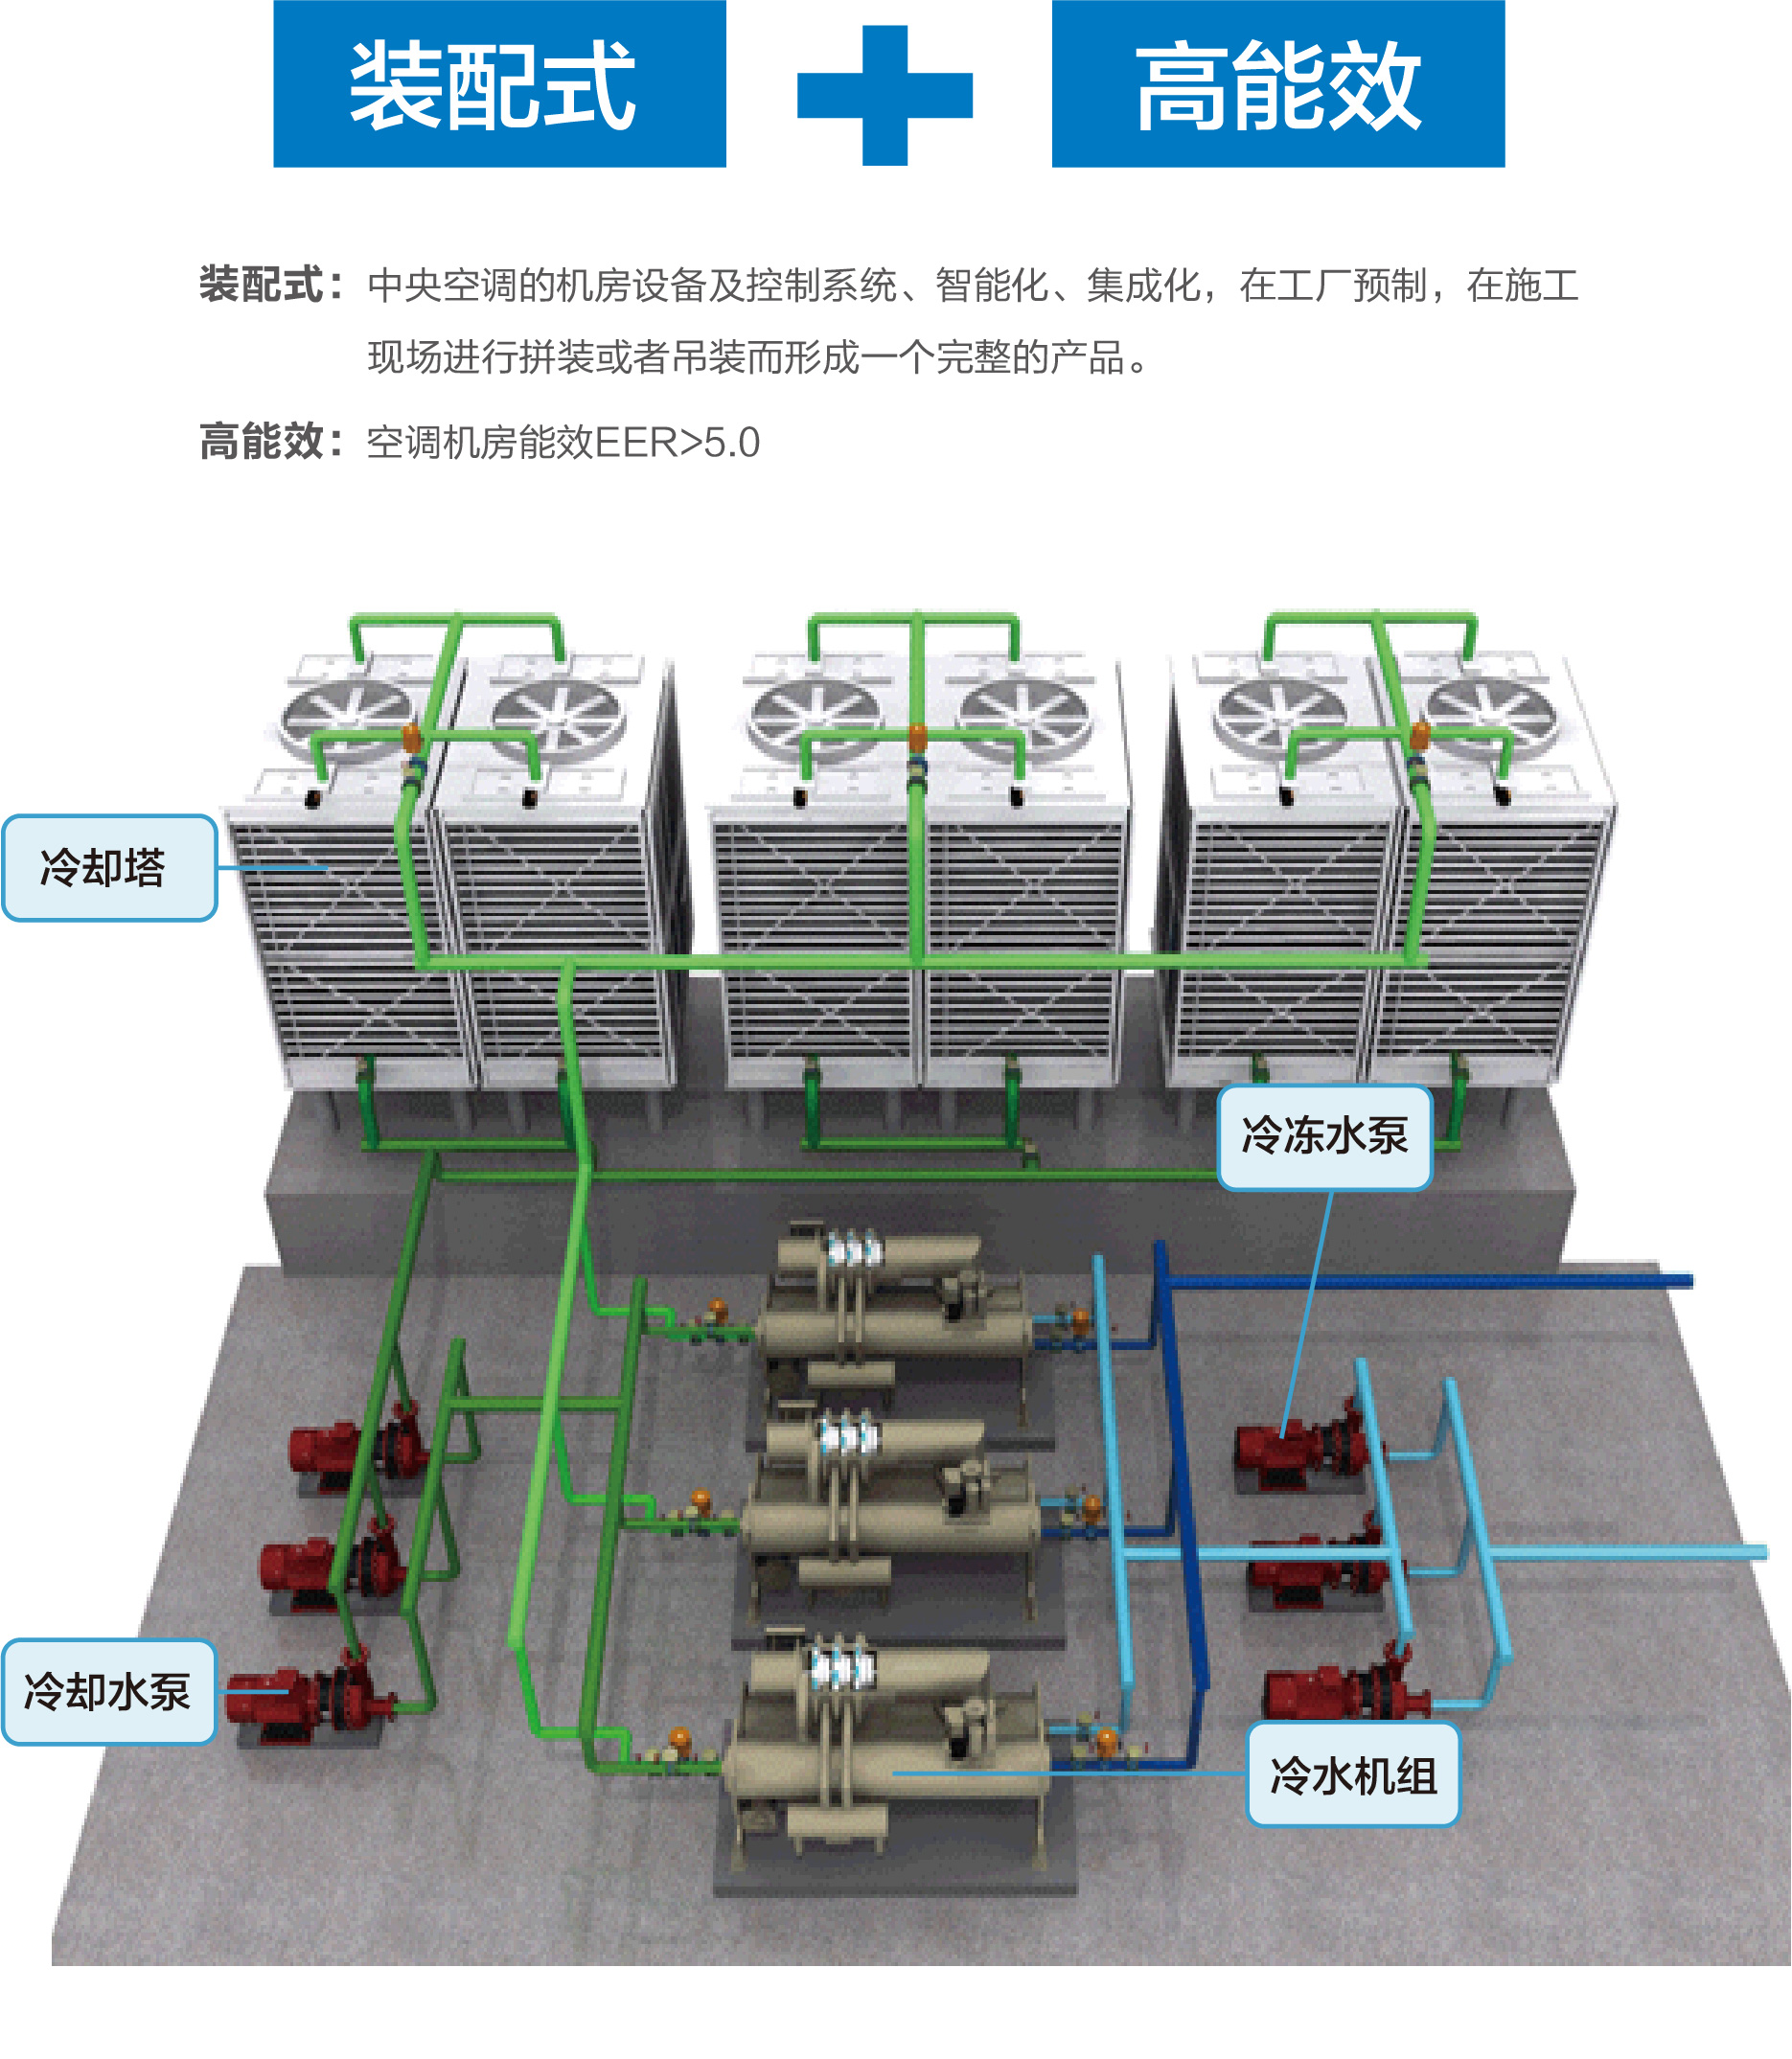 国内首个“三塔合一”百万级电厂间冷塔施工到顶 - 中国电力网-